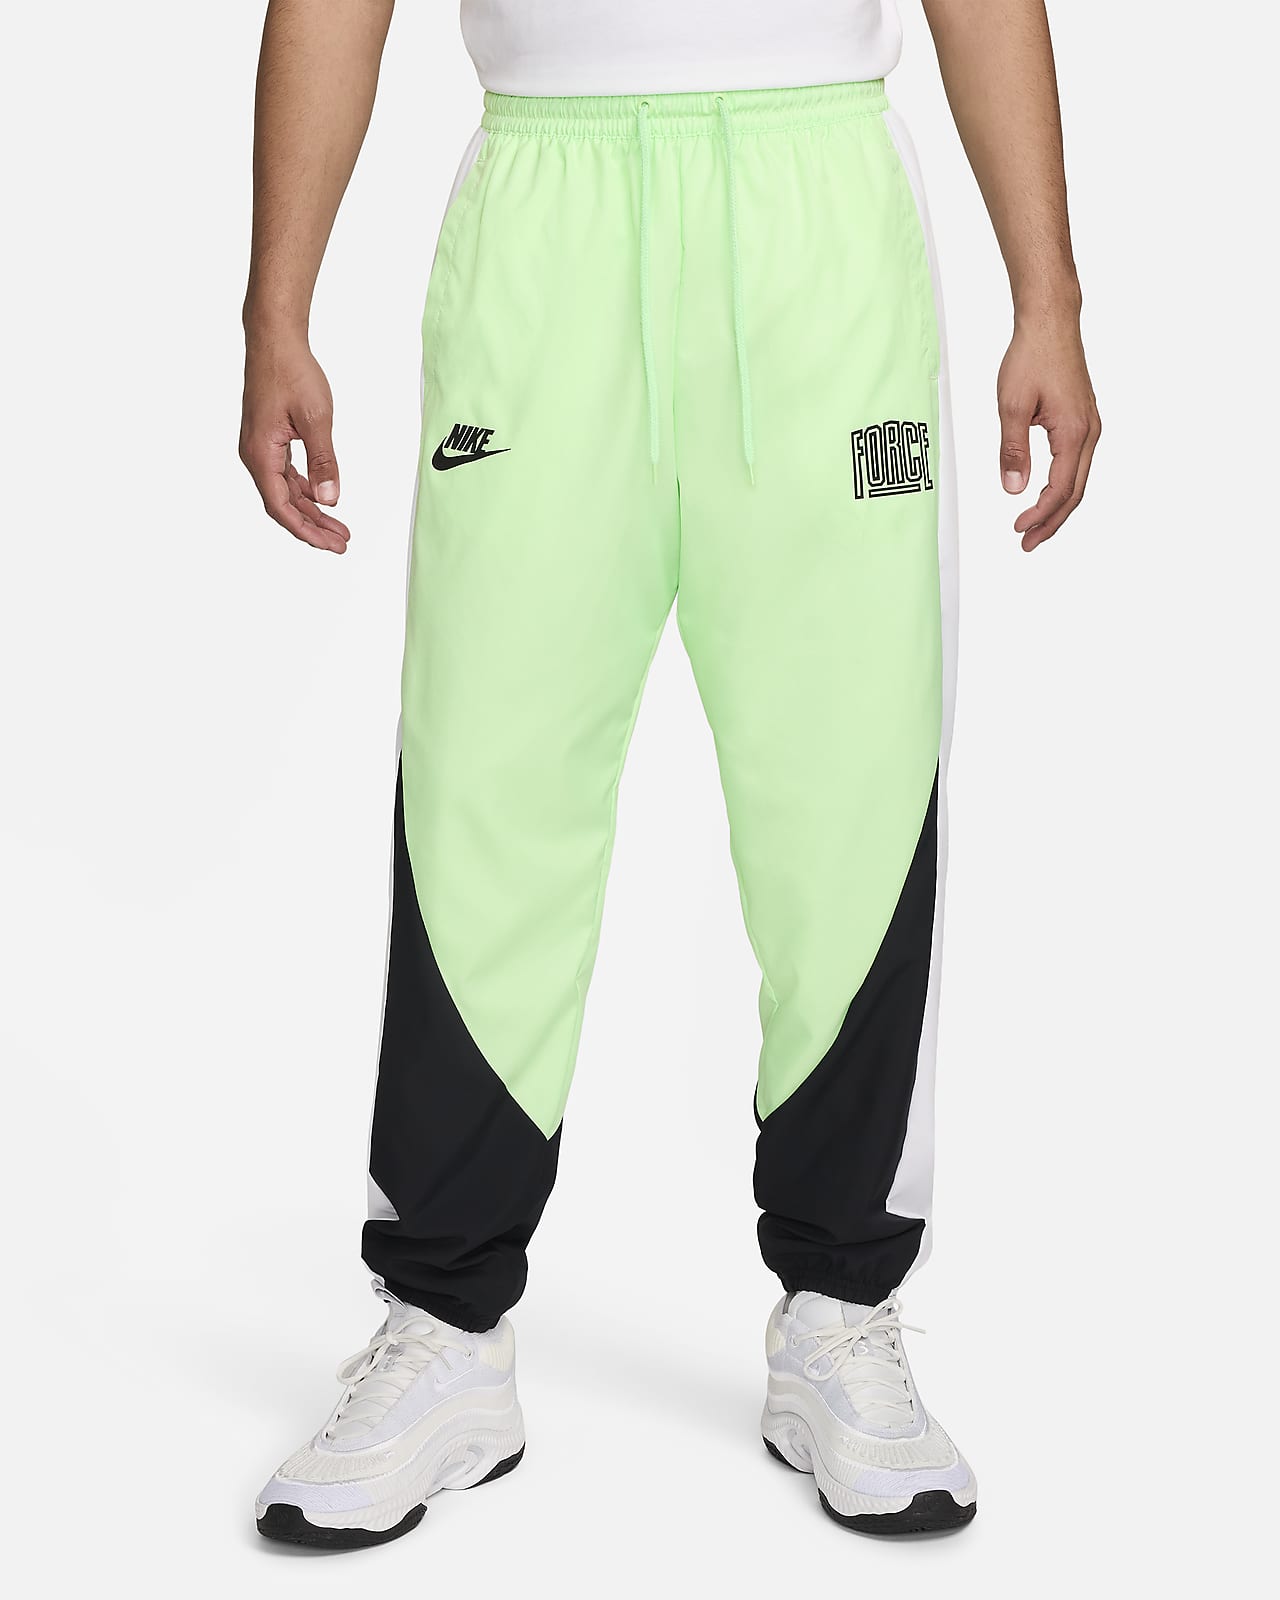 Męskie spodnie do koszykówki Nike Starting 5